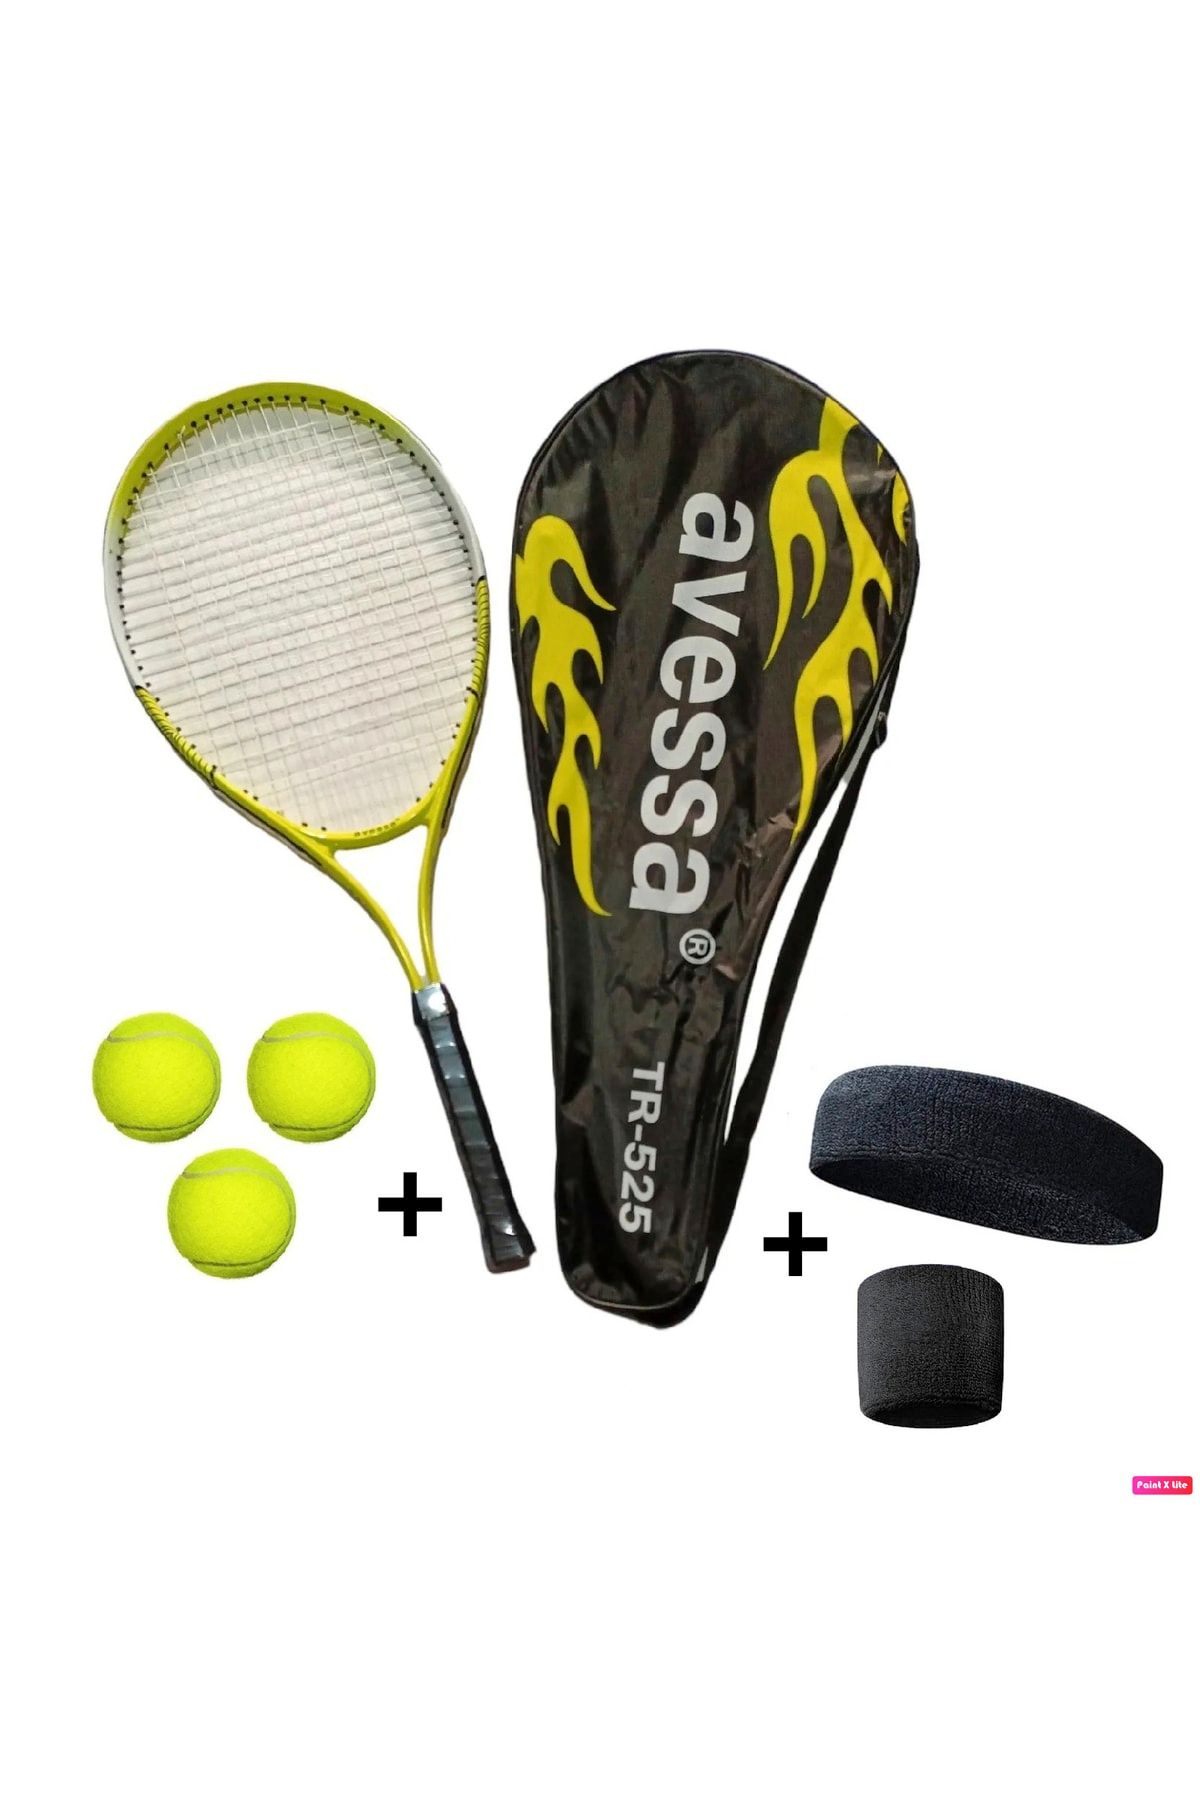 Avessa 4'lü Tenisçi Seti Tr-525 25 Inç 216 Gr + 3 Adet Tenis Topu + Havlu Kafa Bandı Ve Bileklik